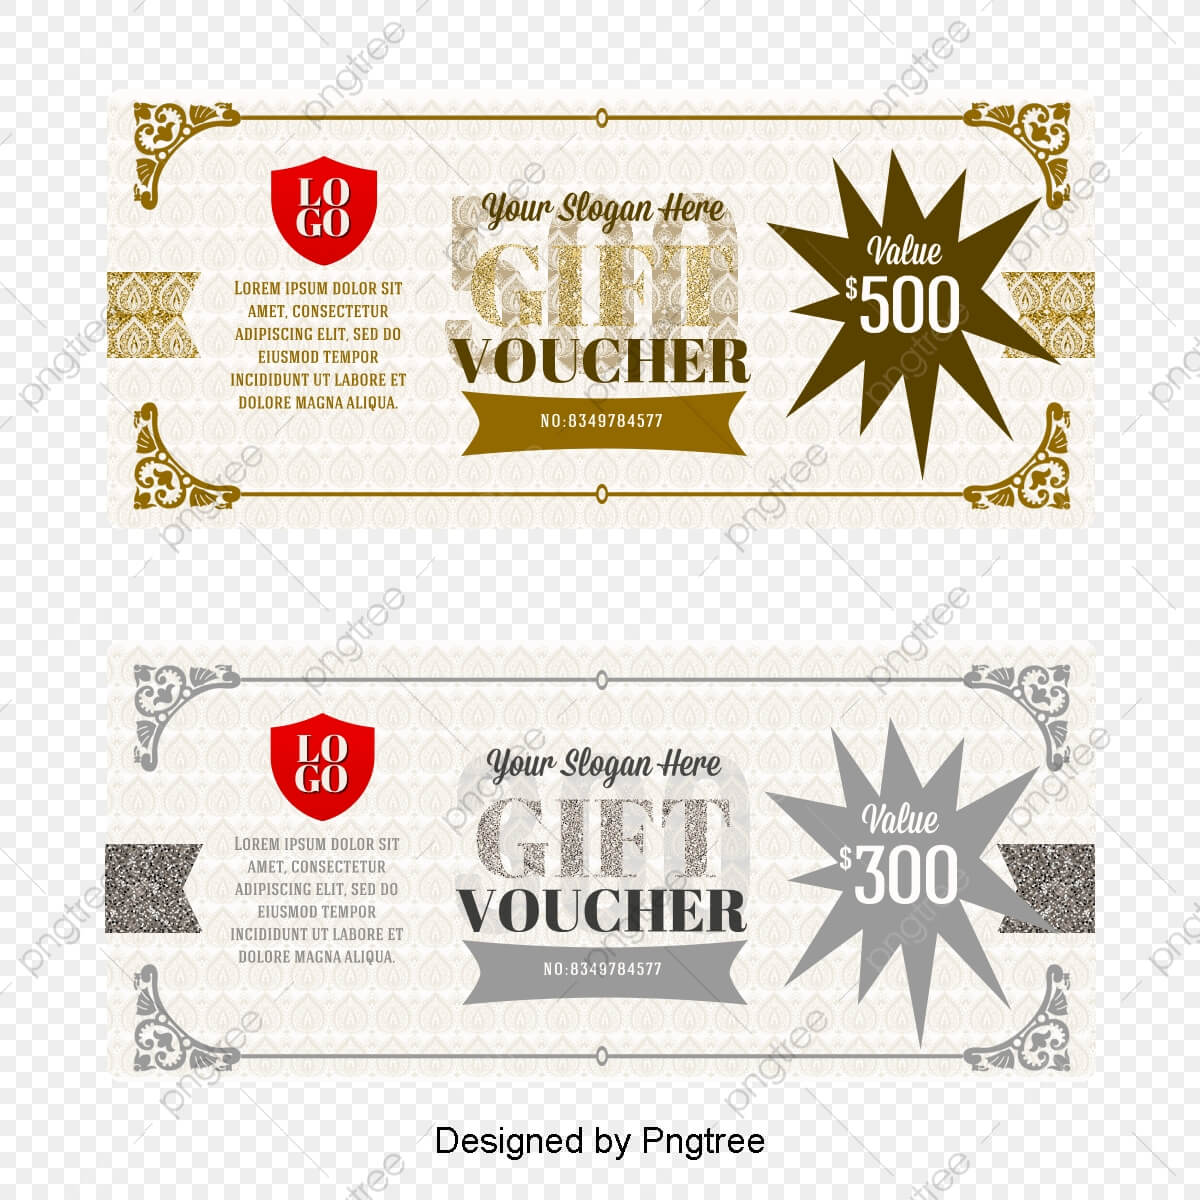 Vector Gift Certificate Template, Vector Voucher, Fantasy Inside Gift Certificate Template Photoshop